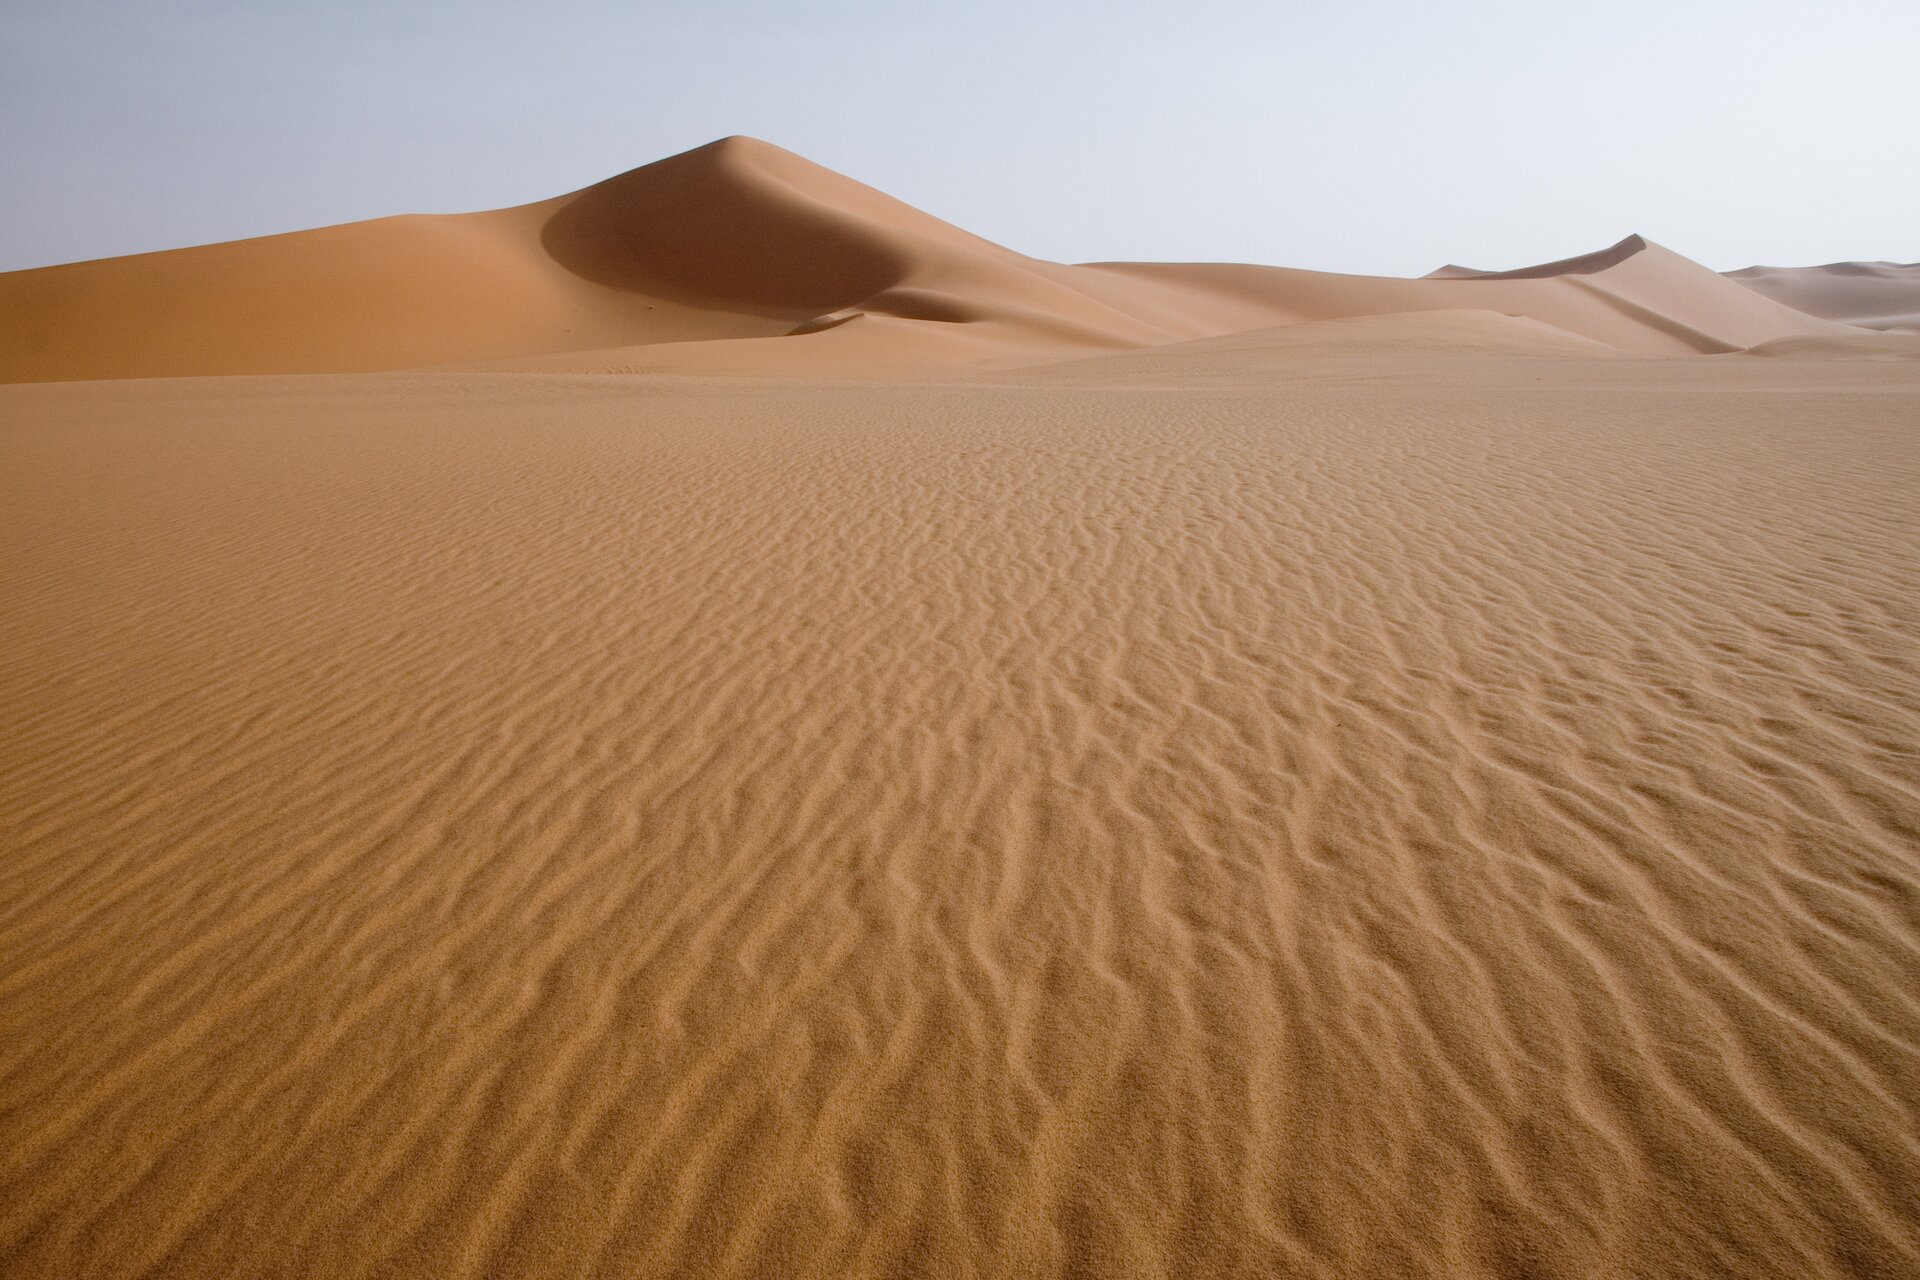 Większą część obszaru Sahary pokrywają lotne piaski, na których nie rozwija się żadna roślinność